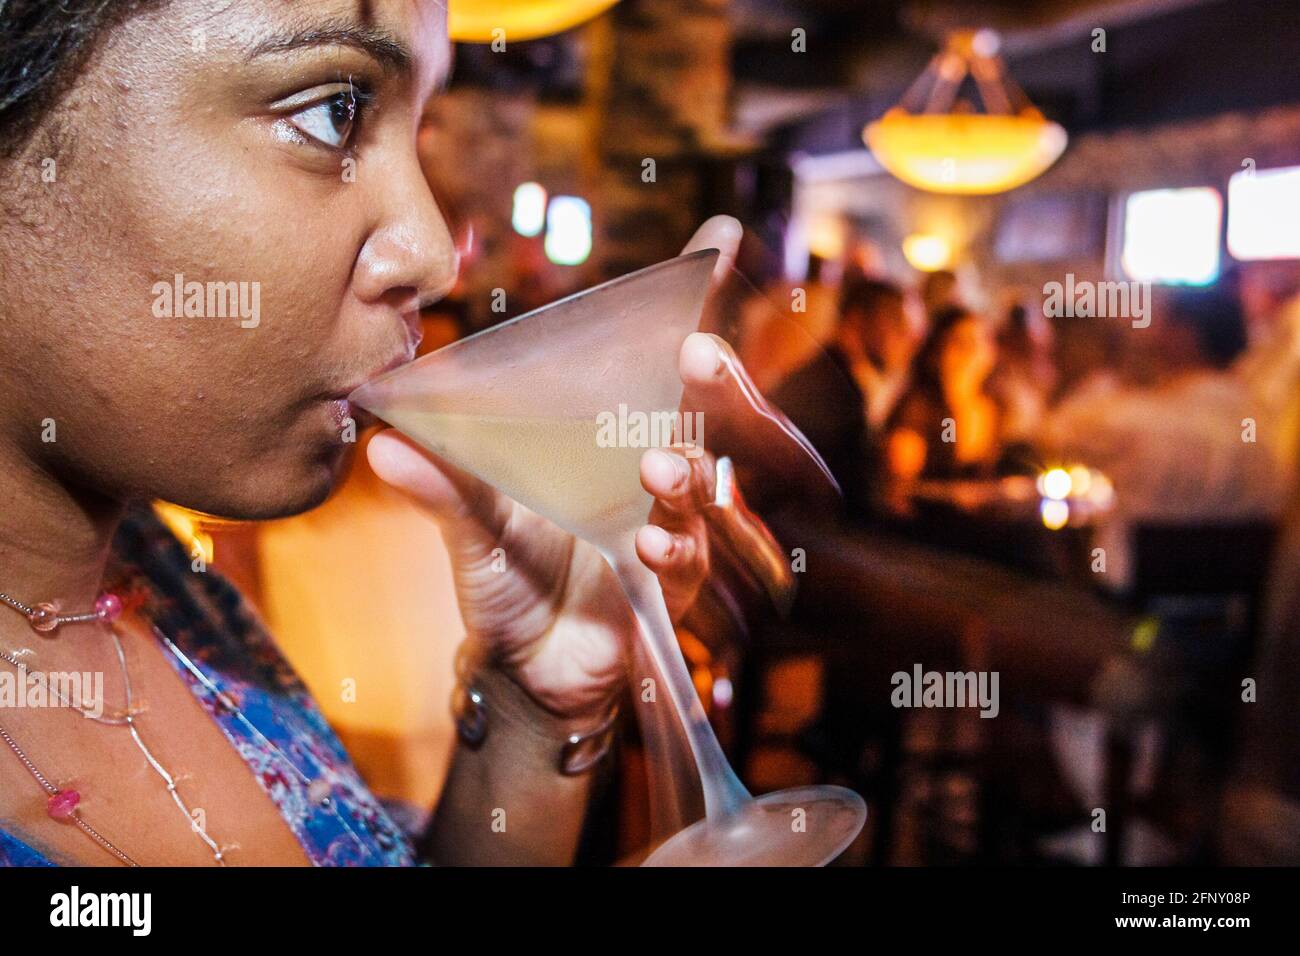 Woman drinking at a bar woman drinking at a bar hi-res stock ...